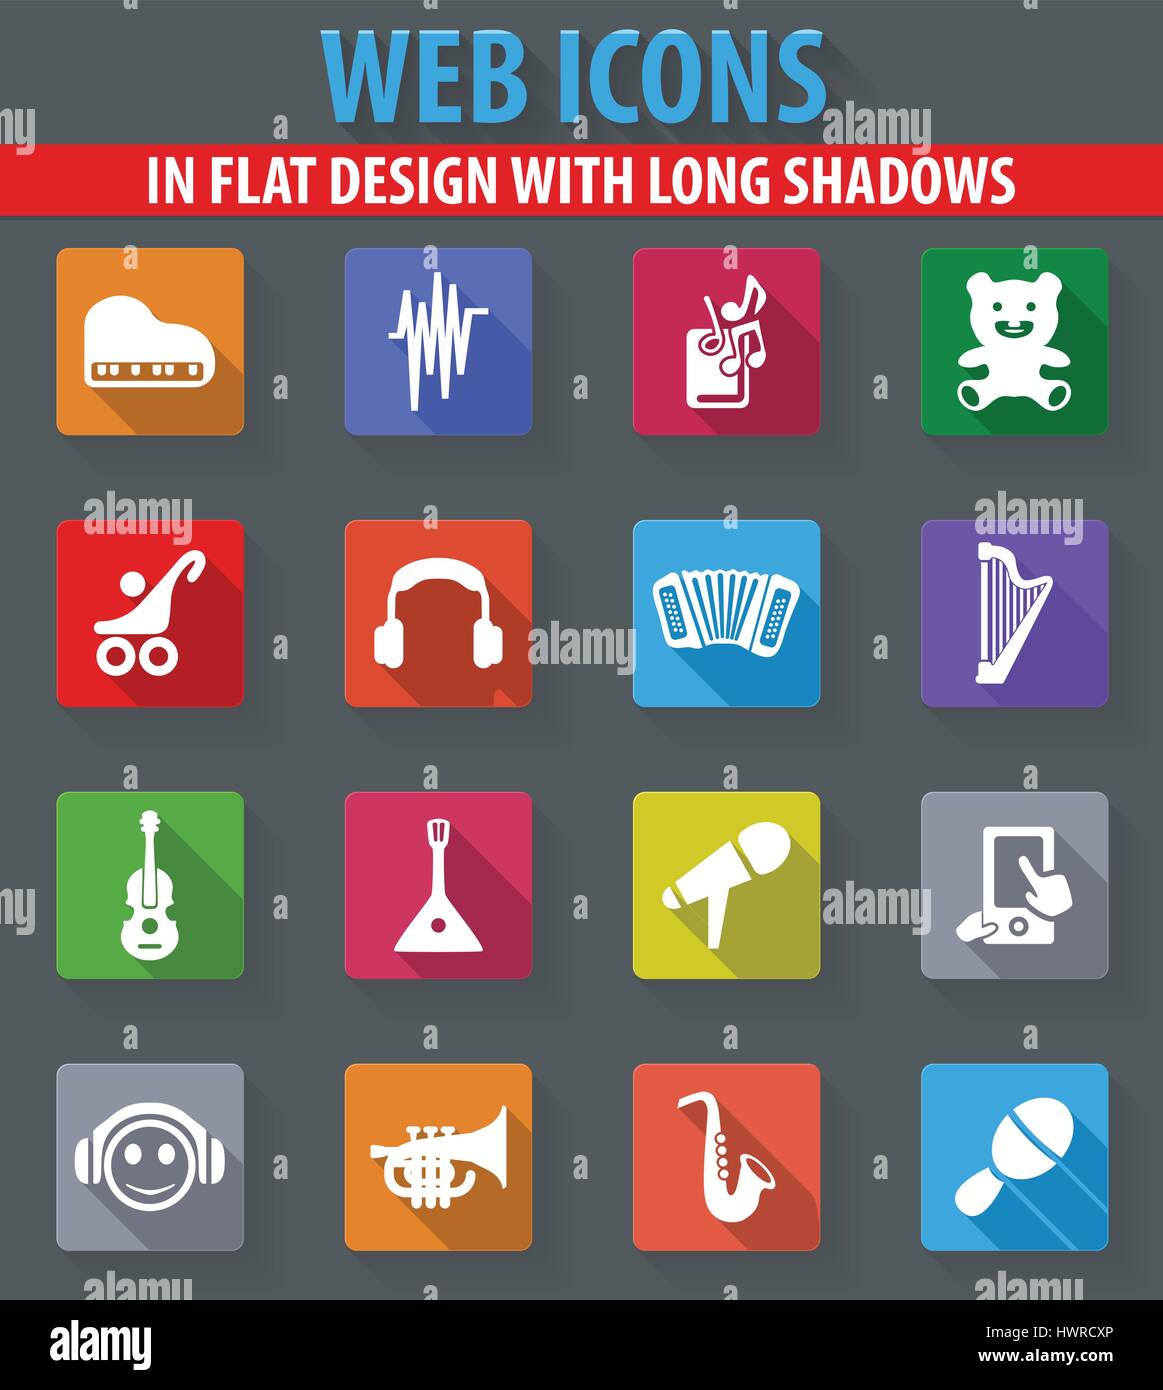 Jouets pour enfants web icons dans télévision design avec de longues ombres Illustration de Vecteur